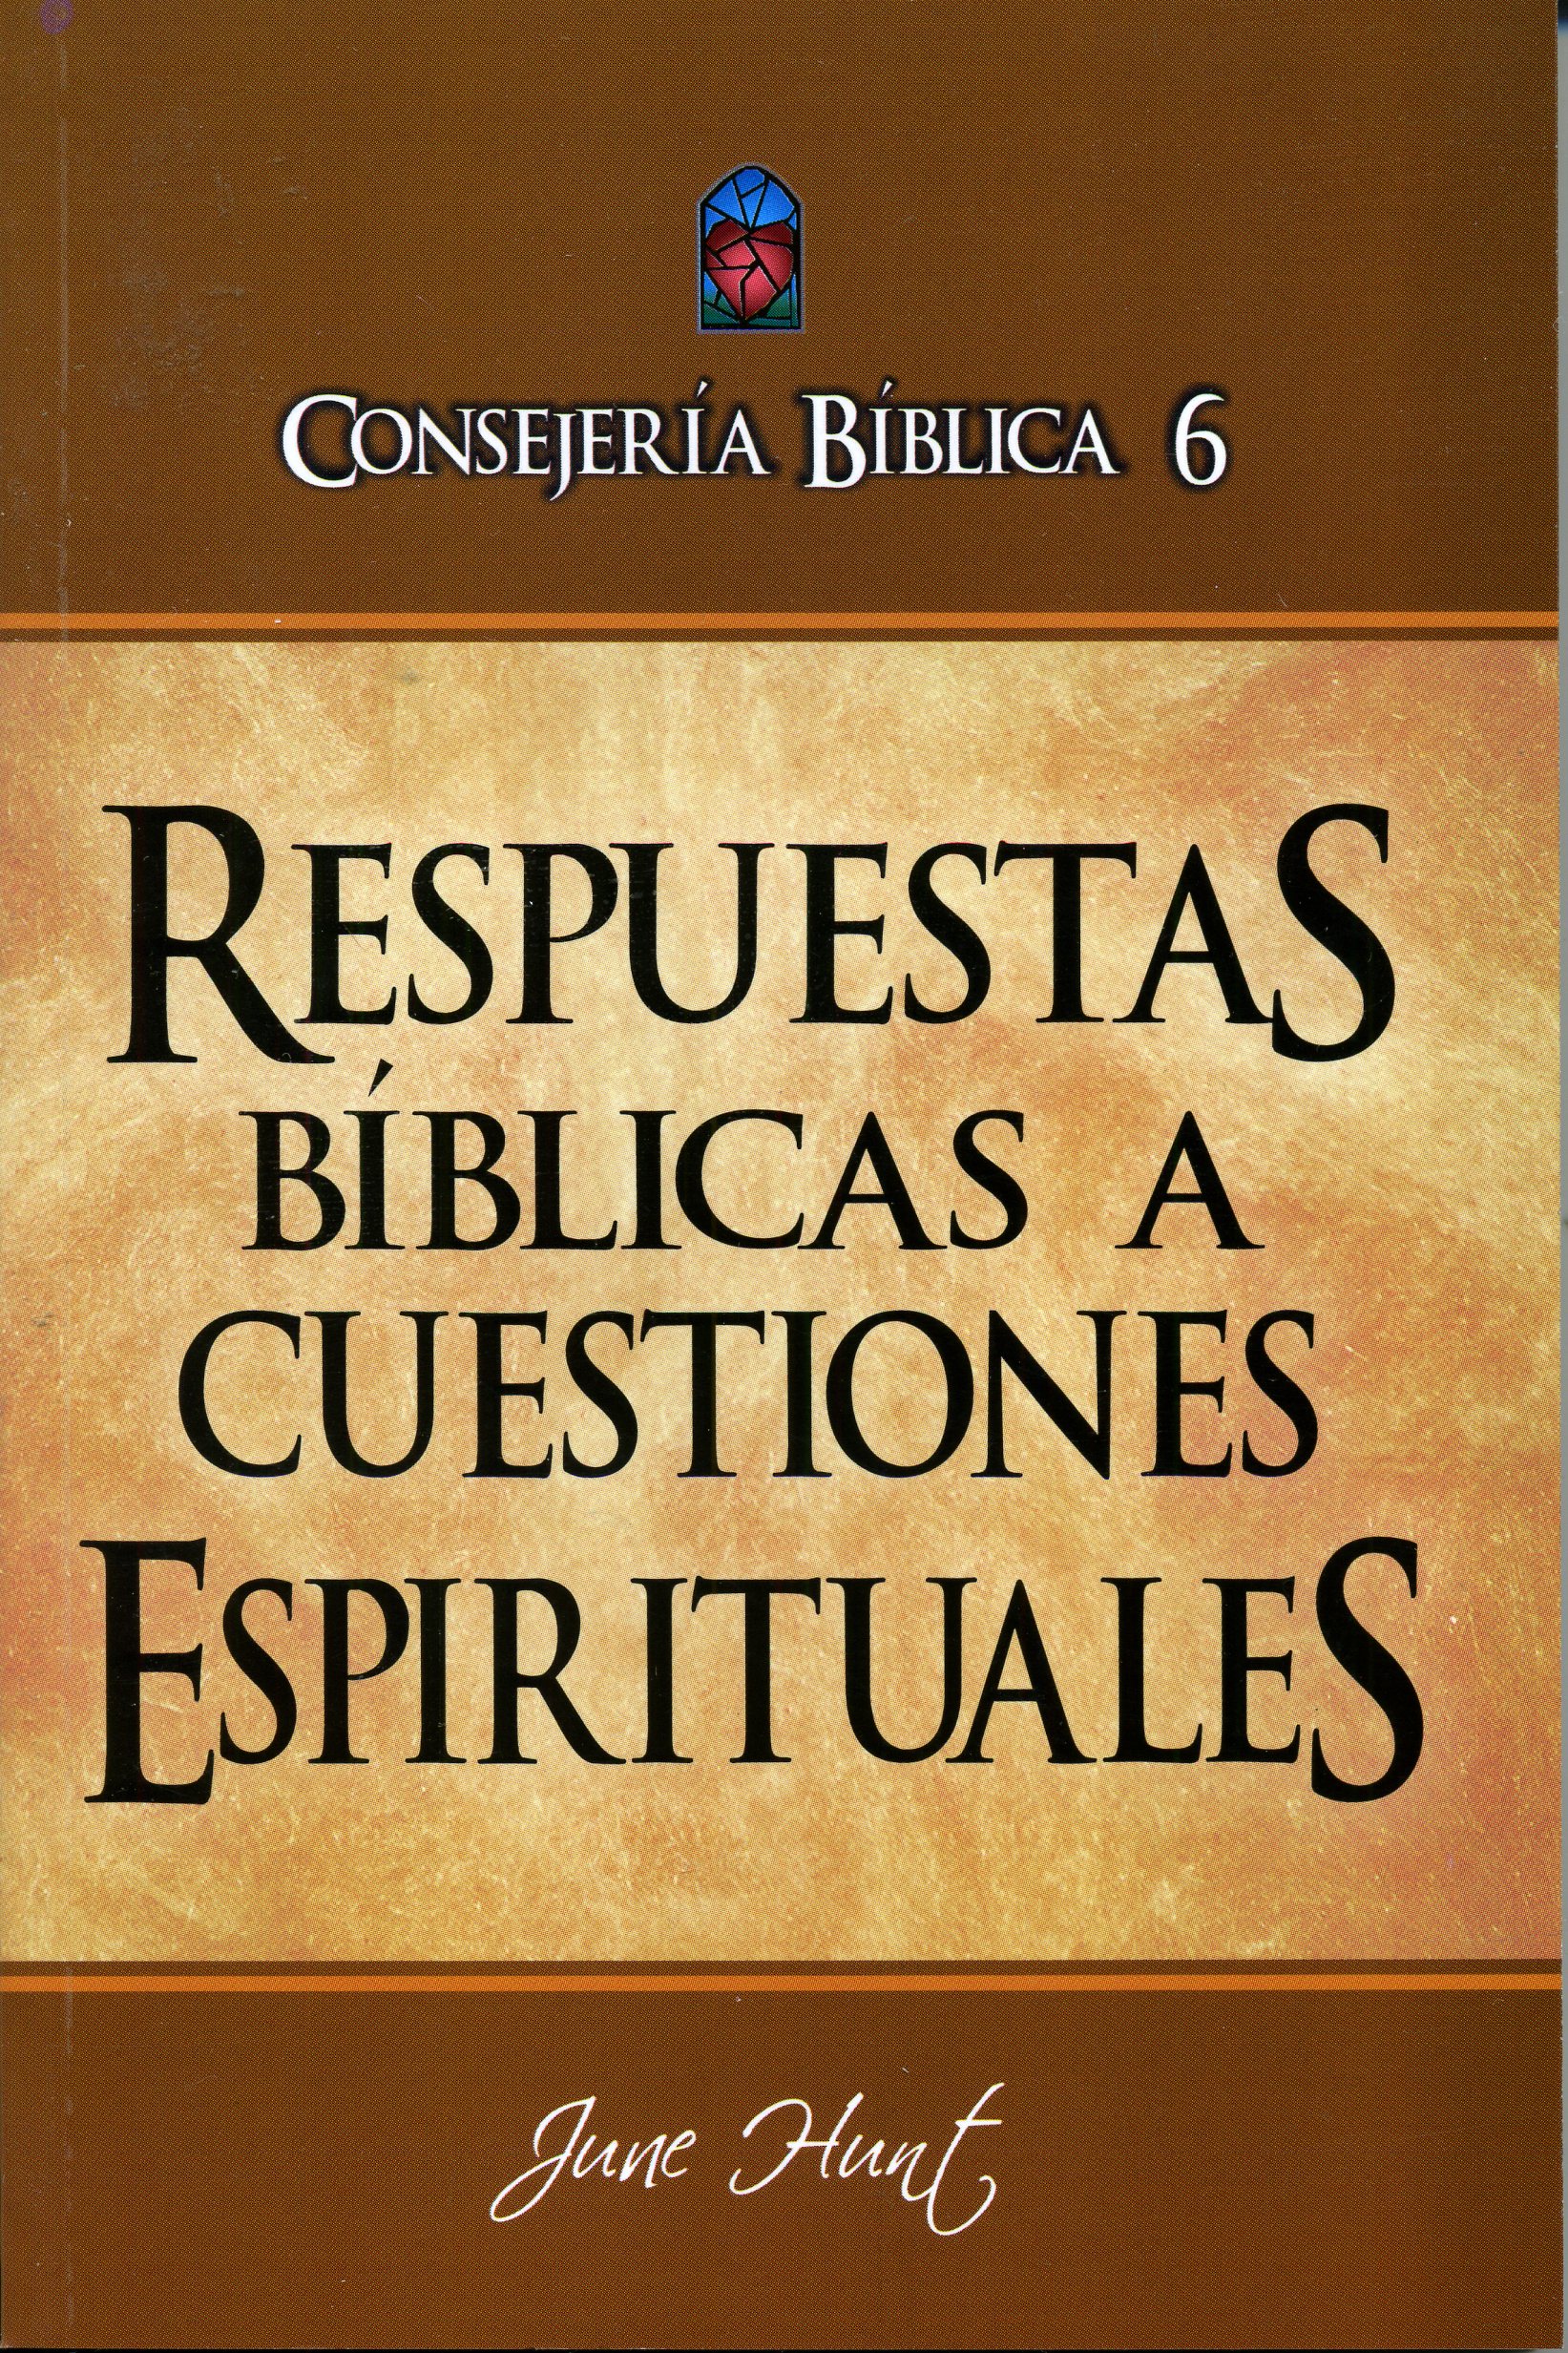 Respuestas Bíblicas a Cuestiones Espirituales